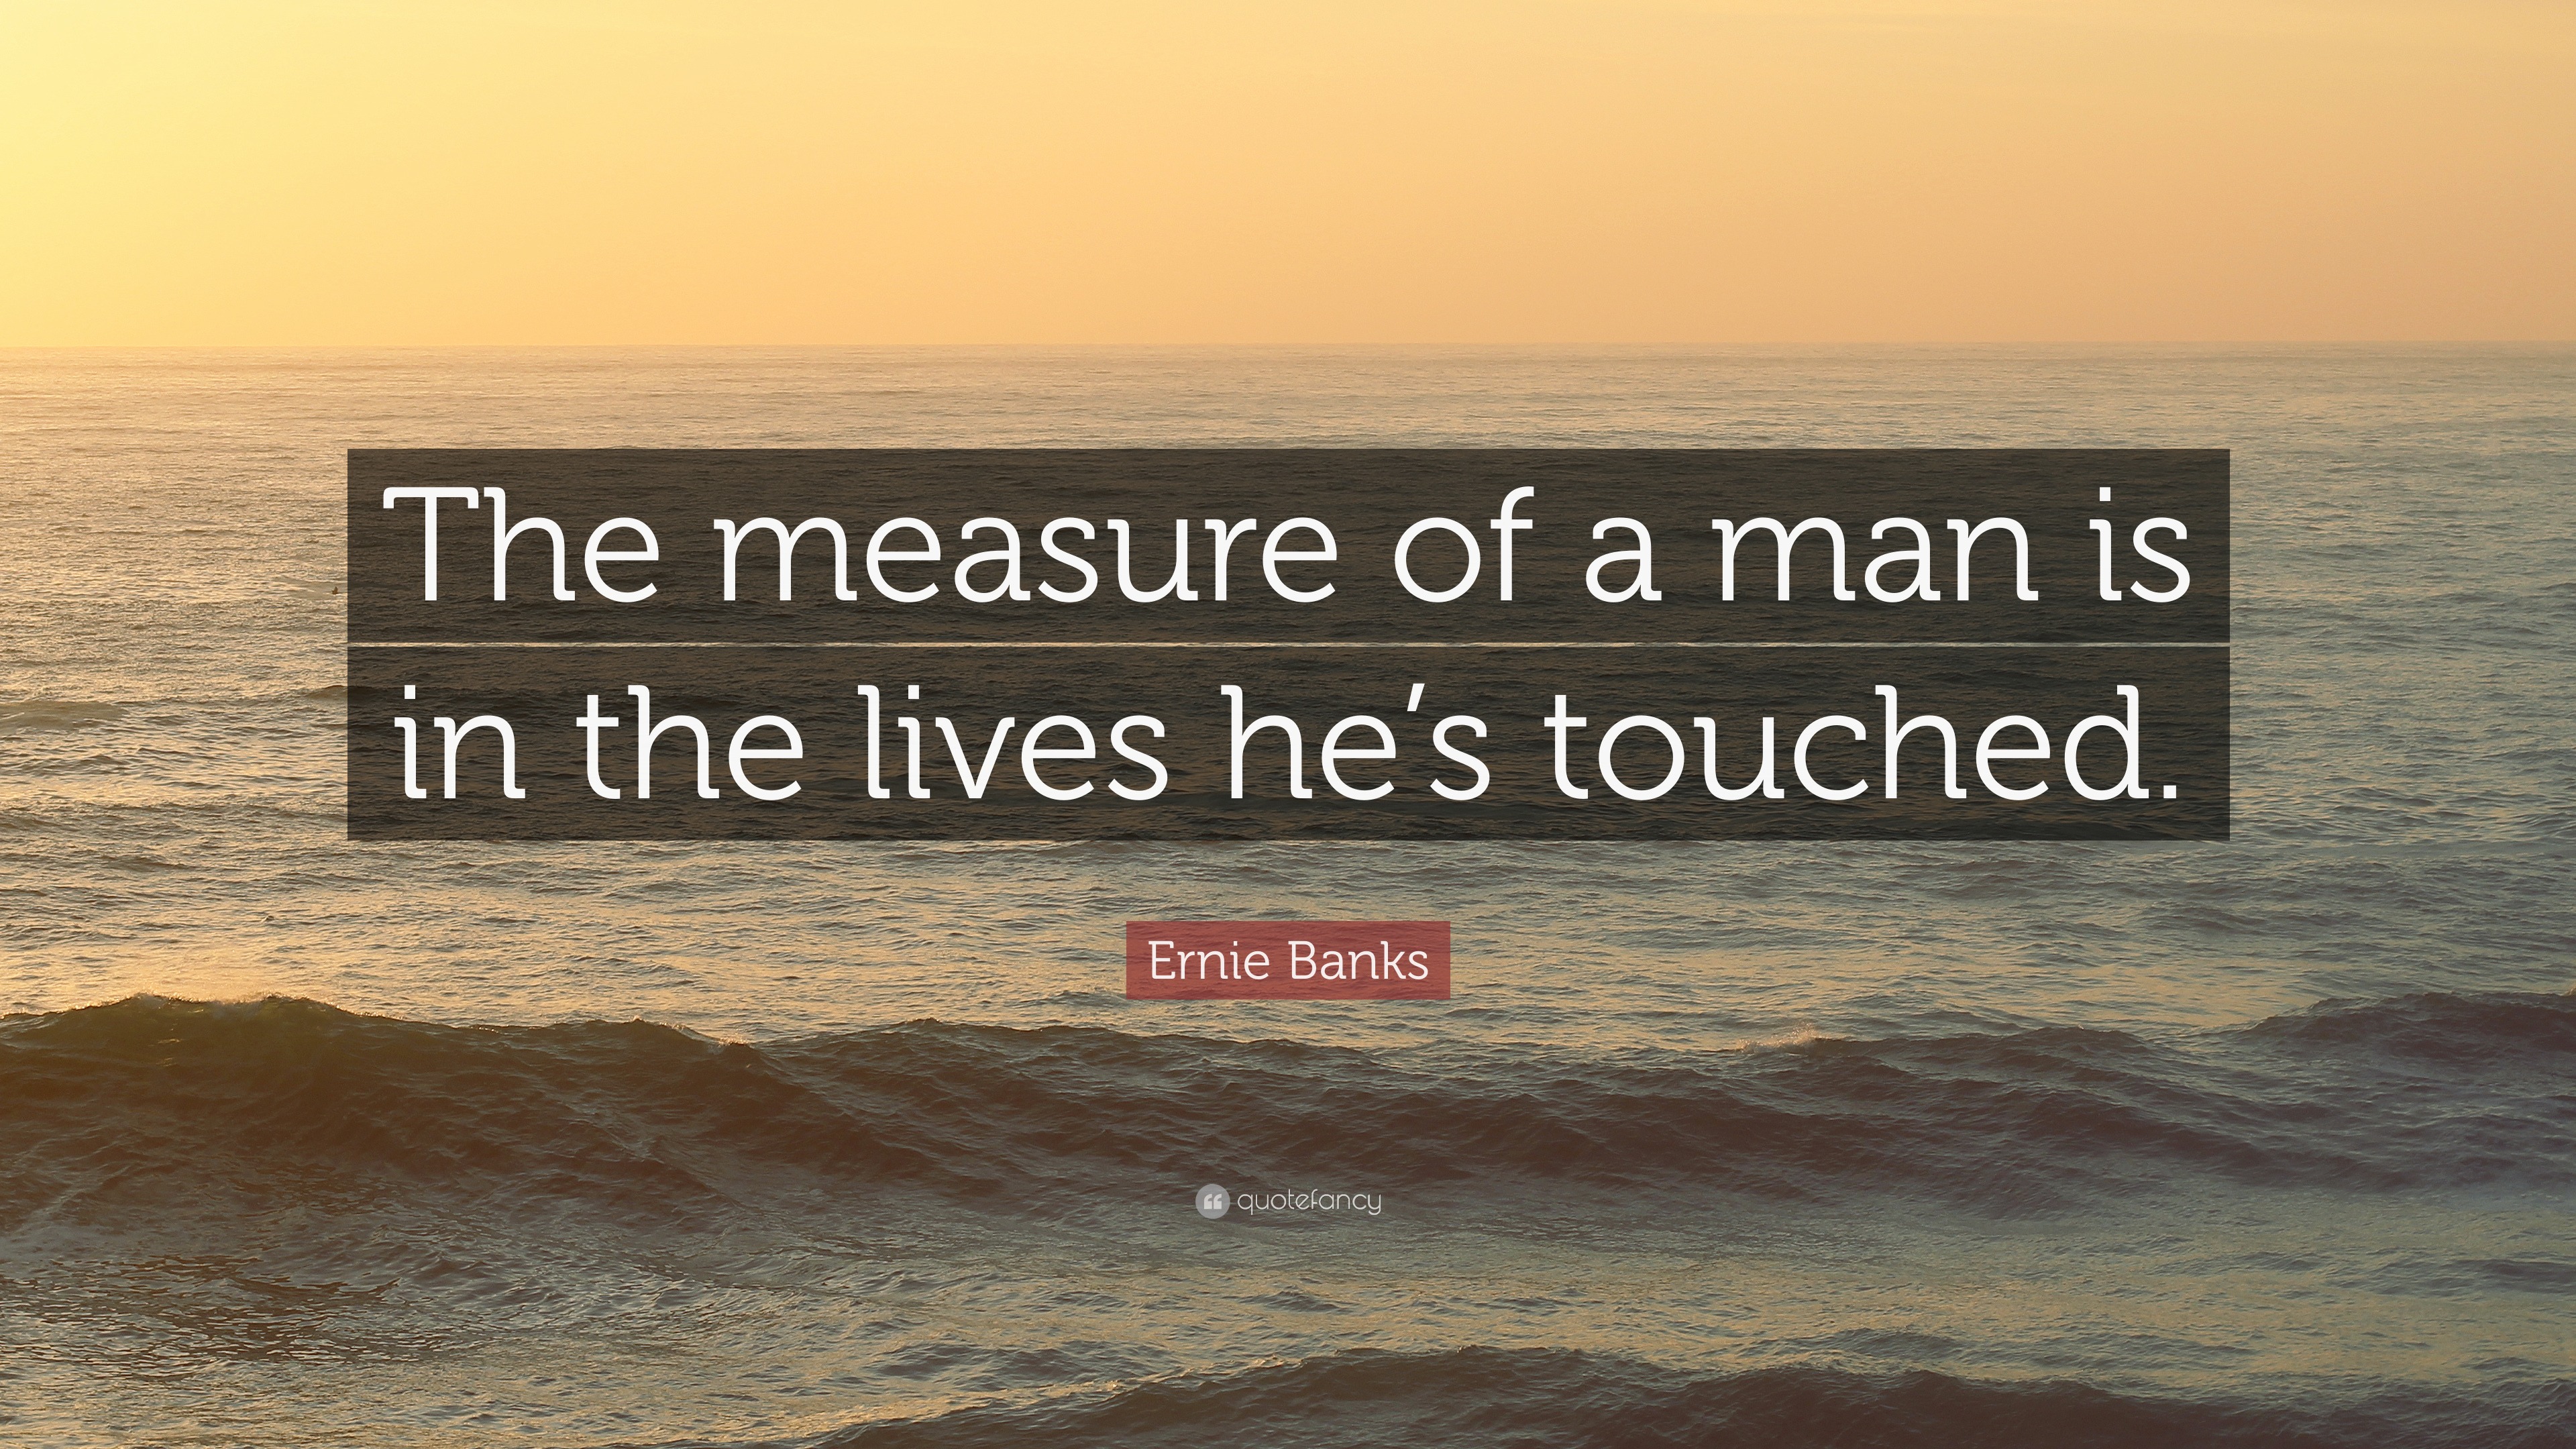 Ernie Banks Quotes - BrainyQuote